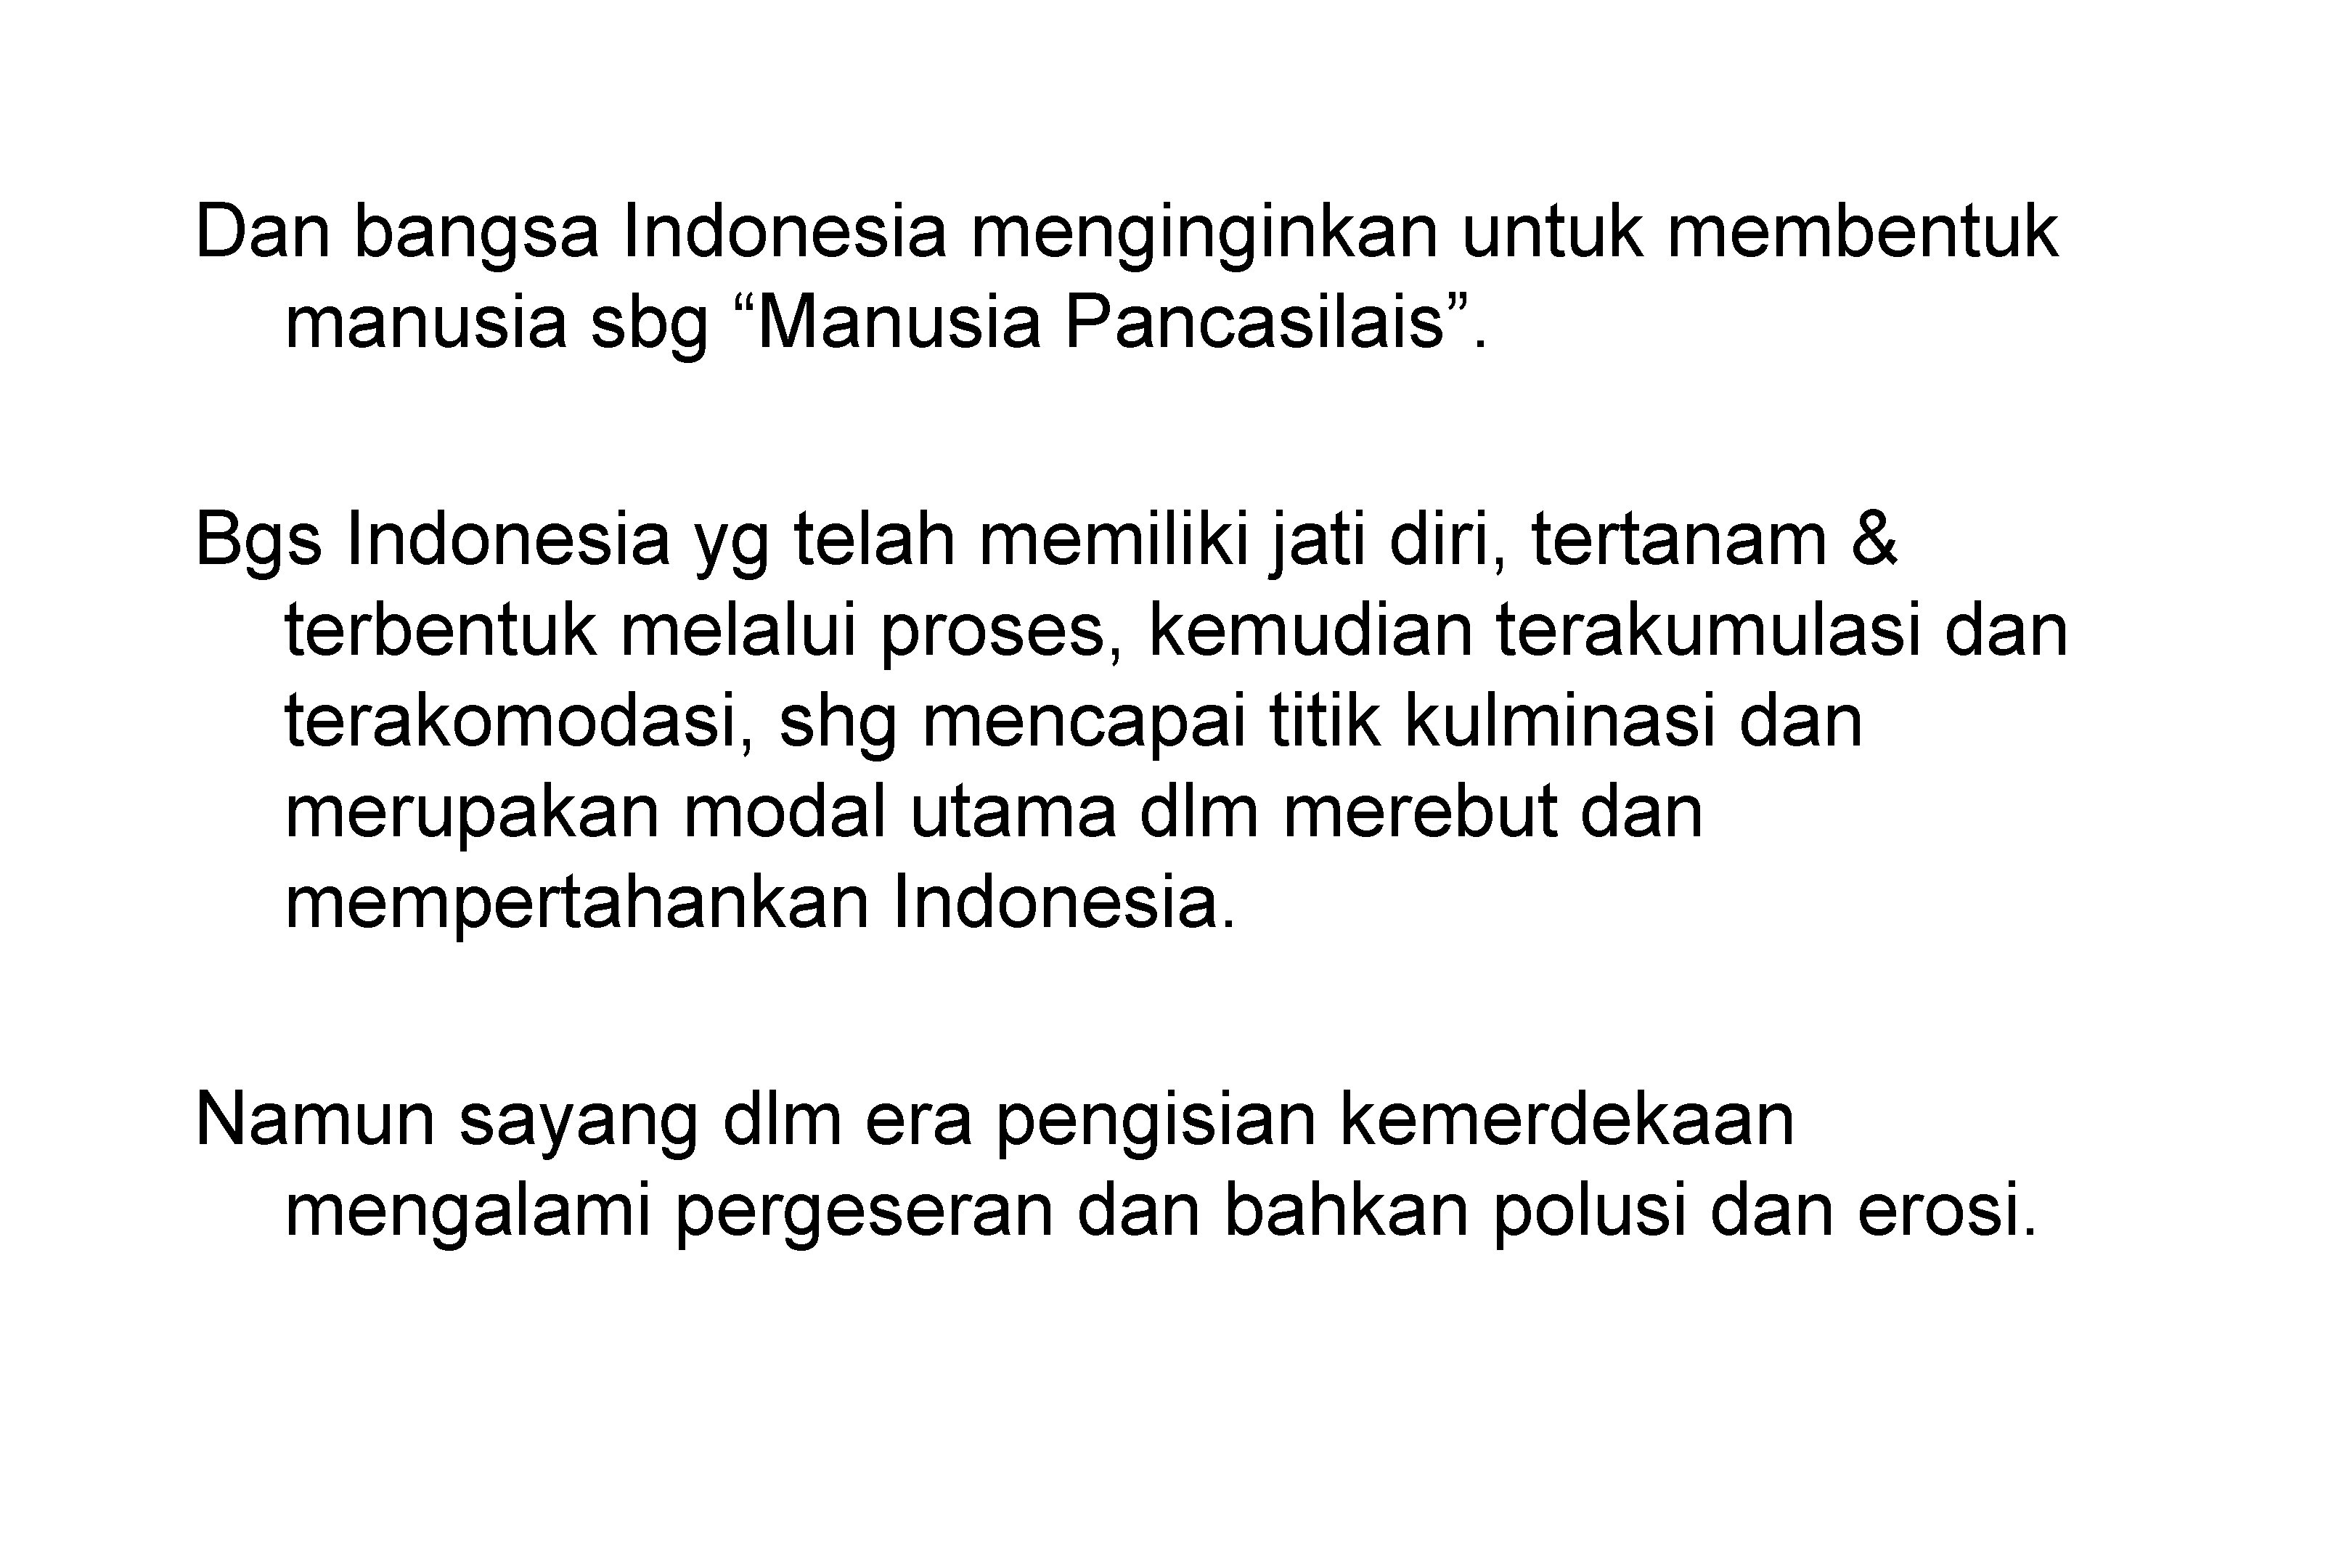 Dan bangsa Indonesia menginginkan untuk membentuk manusia sbg “Manusia Pancasilais”. Bgs Indonesia yg telah